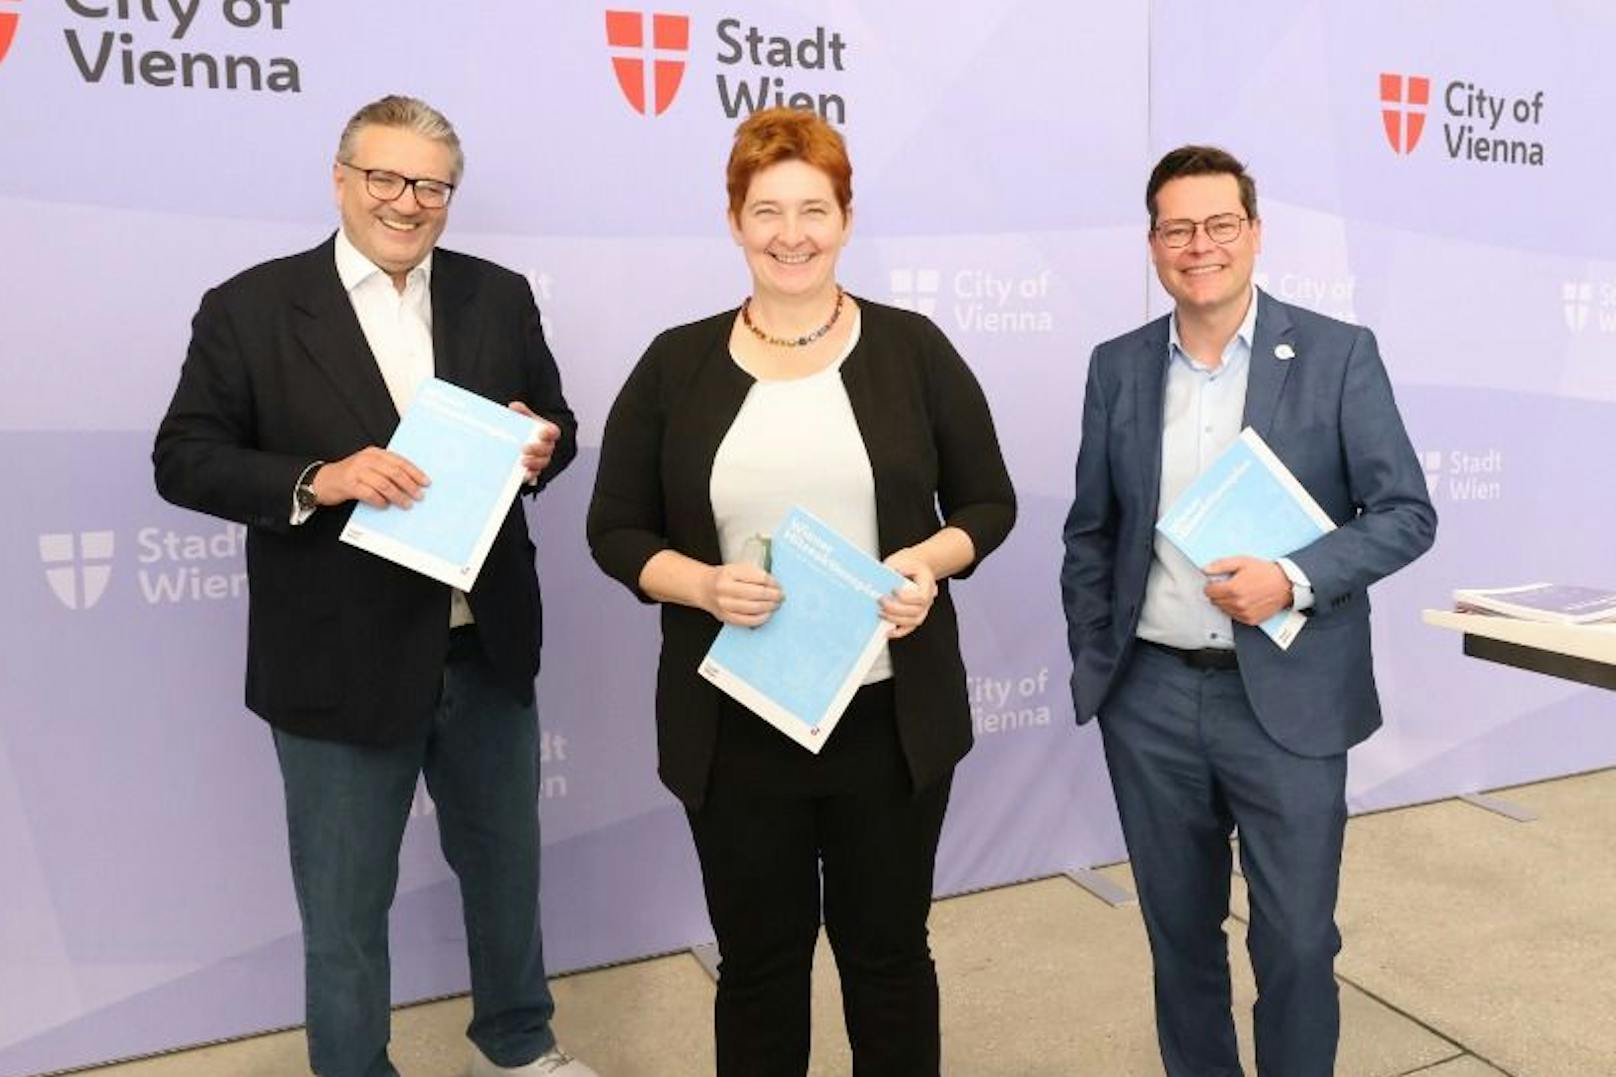 Die Stadträte Peter Hacker (li.) und Jürgen Cernohorszky stellten gemeinsam mit Sigrid Stagl, Vorsitzende des Klimarats, den "Hitzeaktionsplan" der Stadt Wien vor.